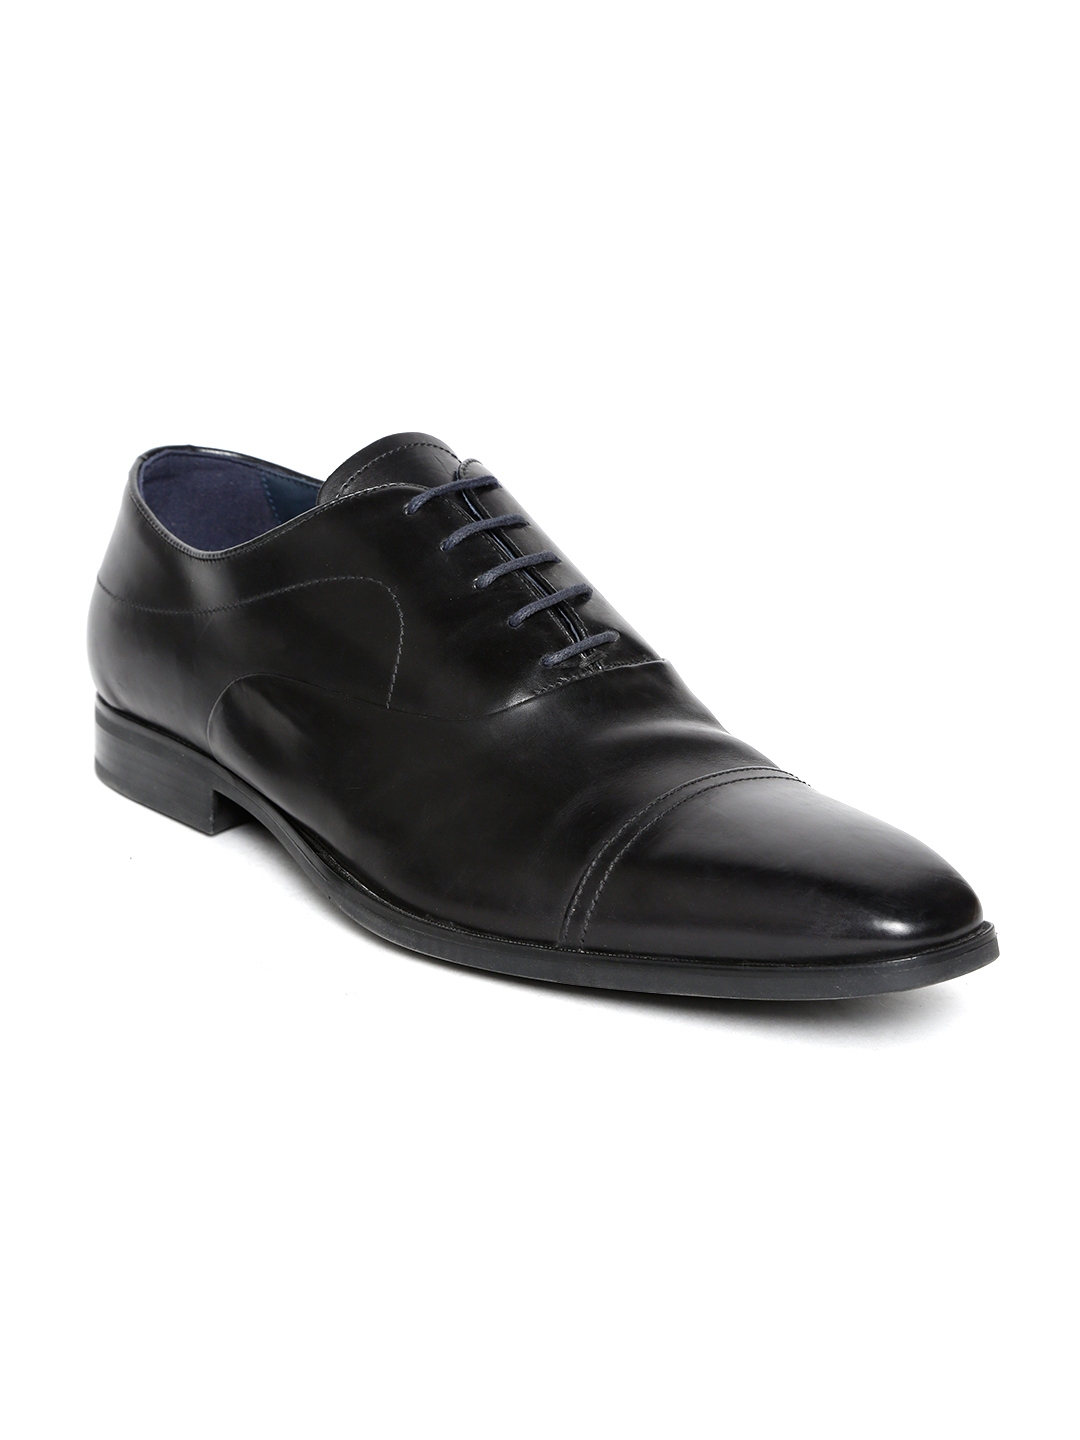 Buy Geox Men Black Leather Formal Oxfords - Formal Shoes for Men ...